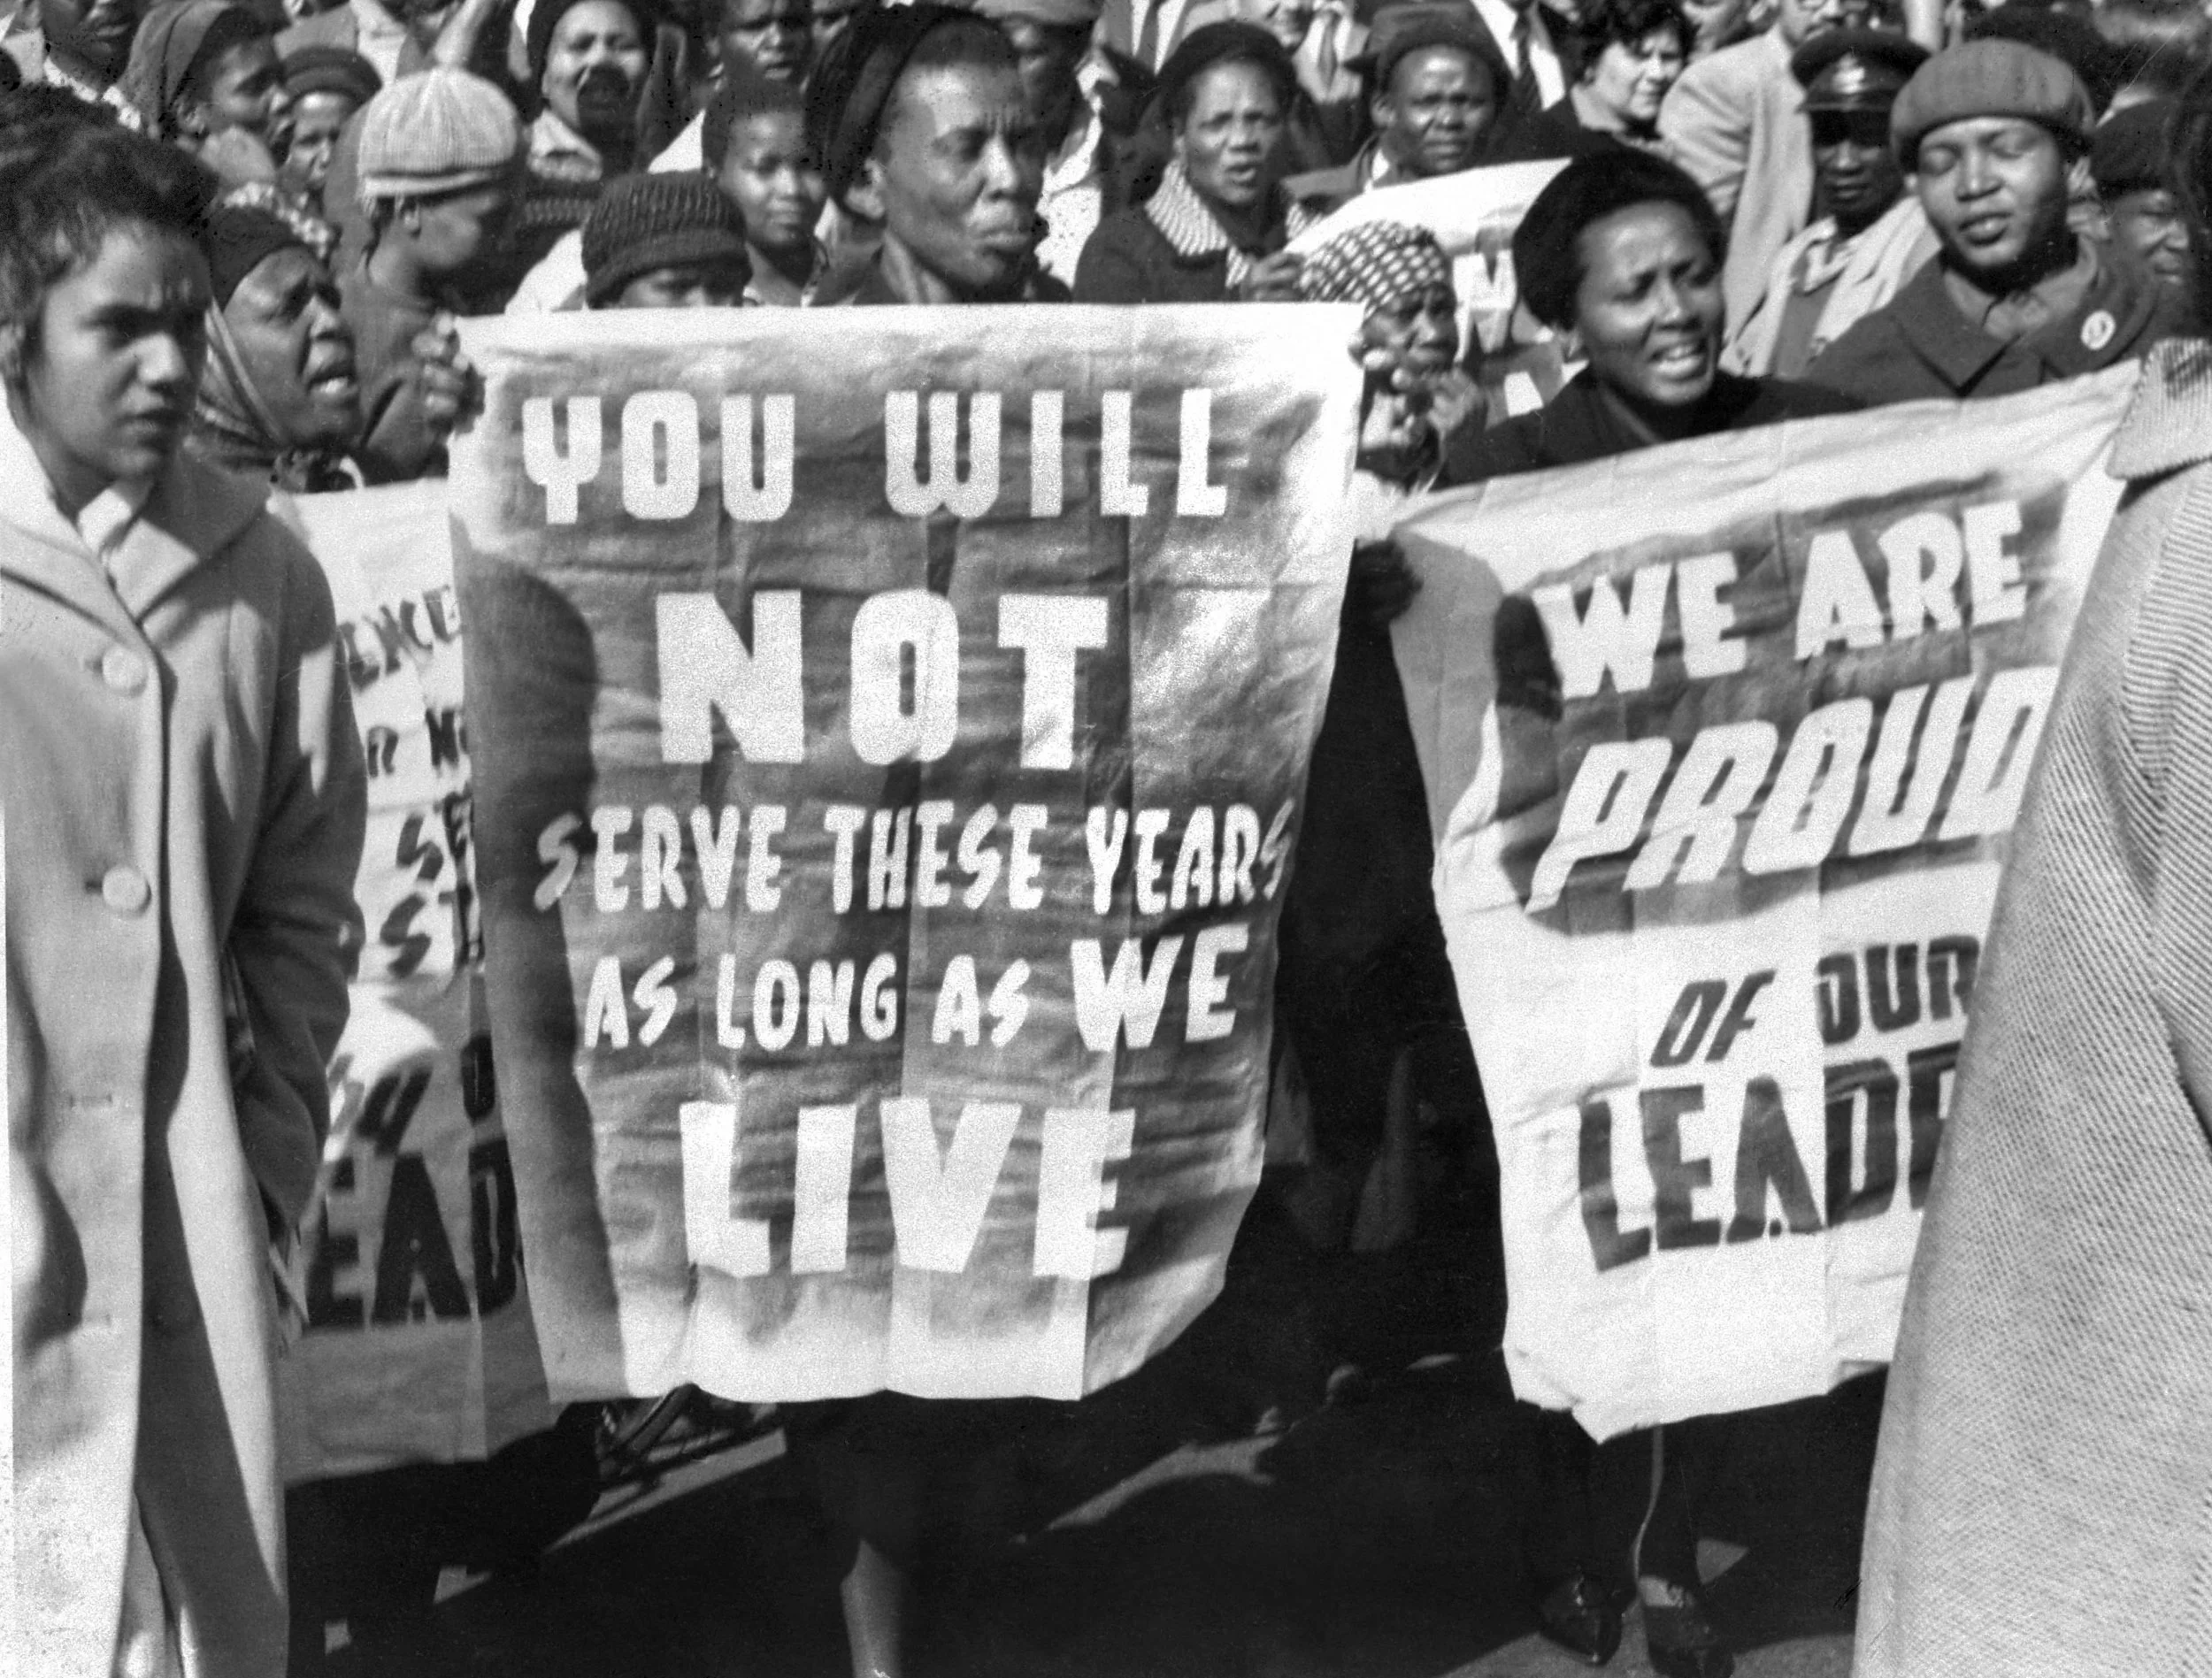 一九六四年六月十二日，法庭宣判曼德拉終身監禁，庭外支持者舉起標語：你必將釋放，只要我們仍然活着。另一標語：為我們的領袖感到自豪。